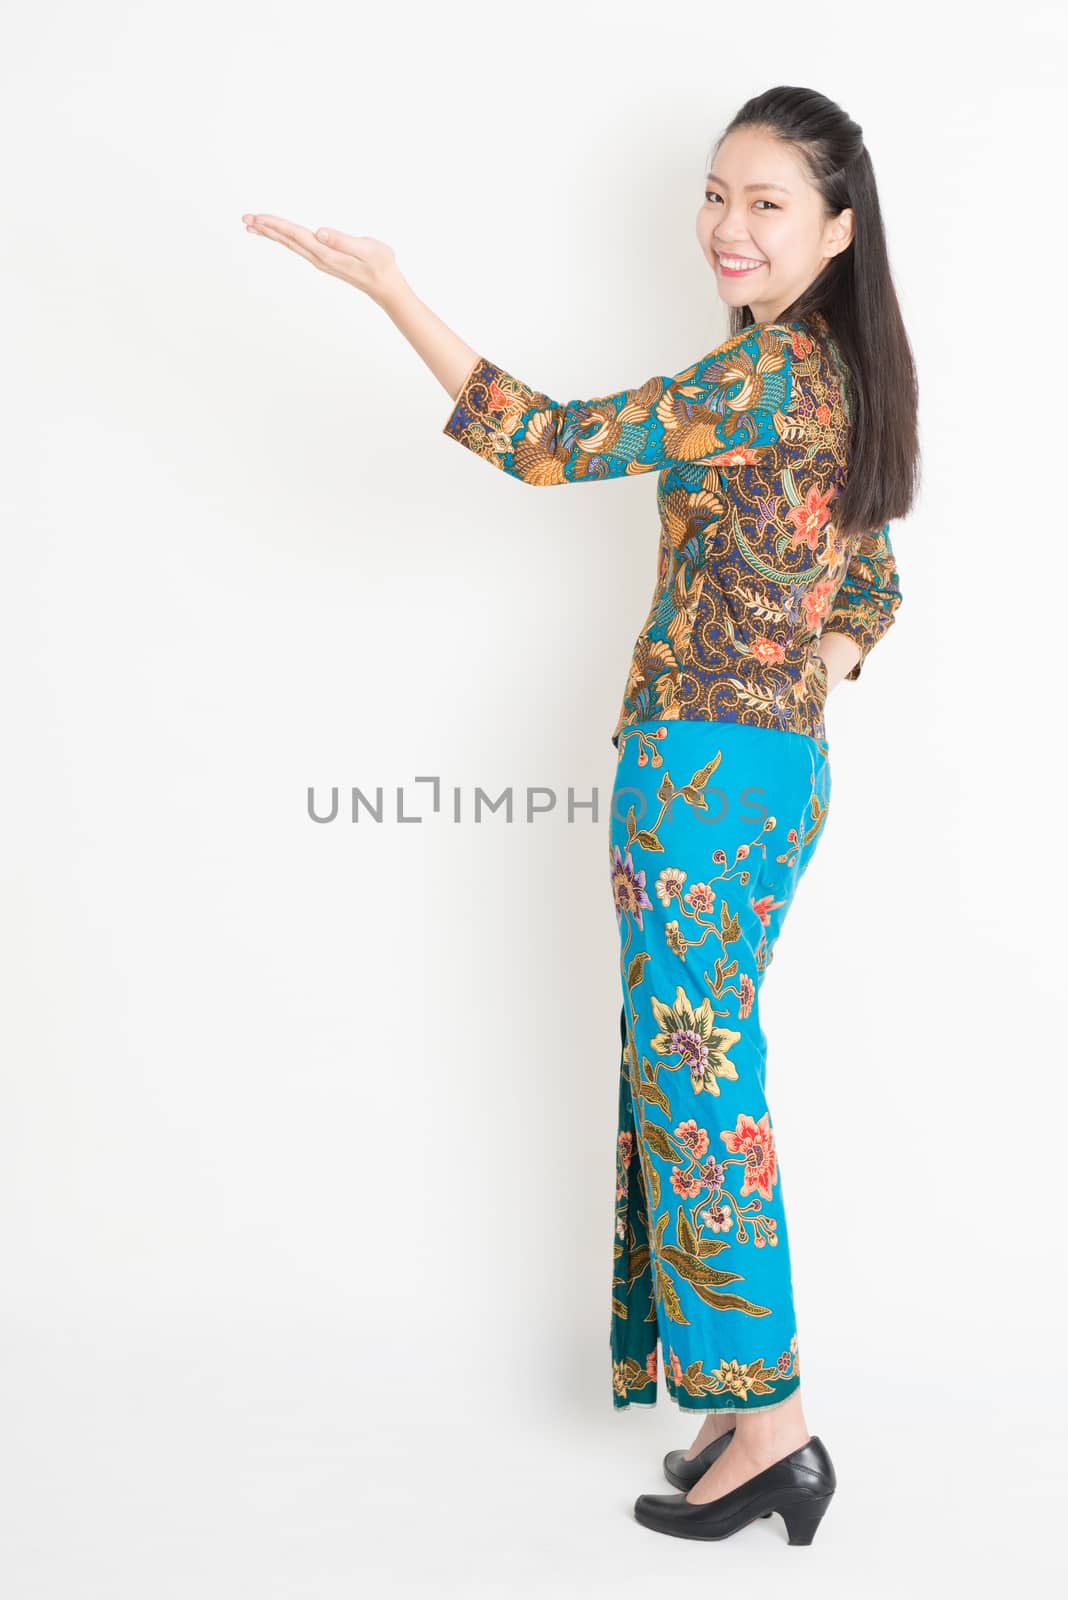 Full length portrait of Southeast Asian female in batik dress hand holding something standing on plain background.